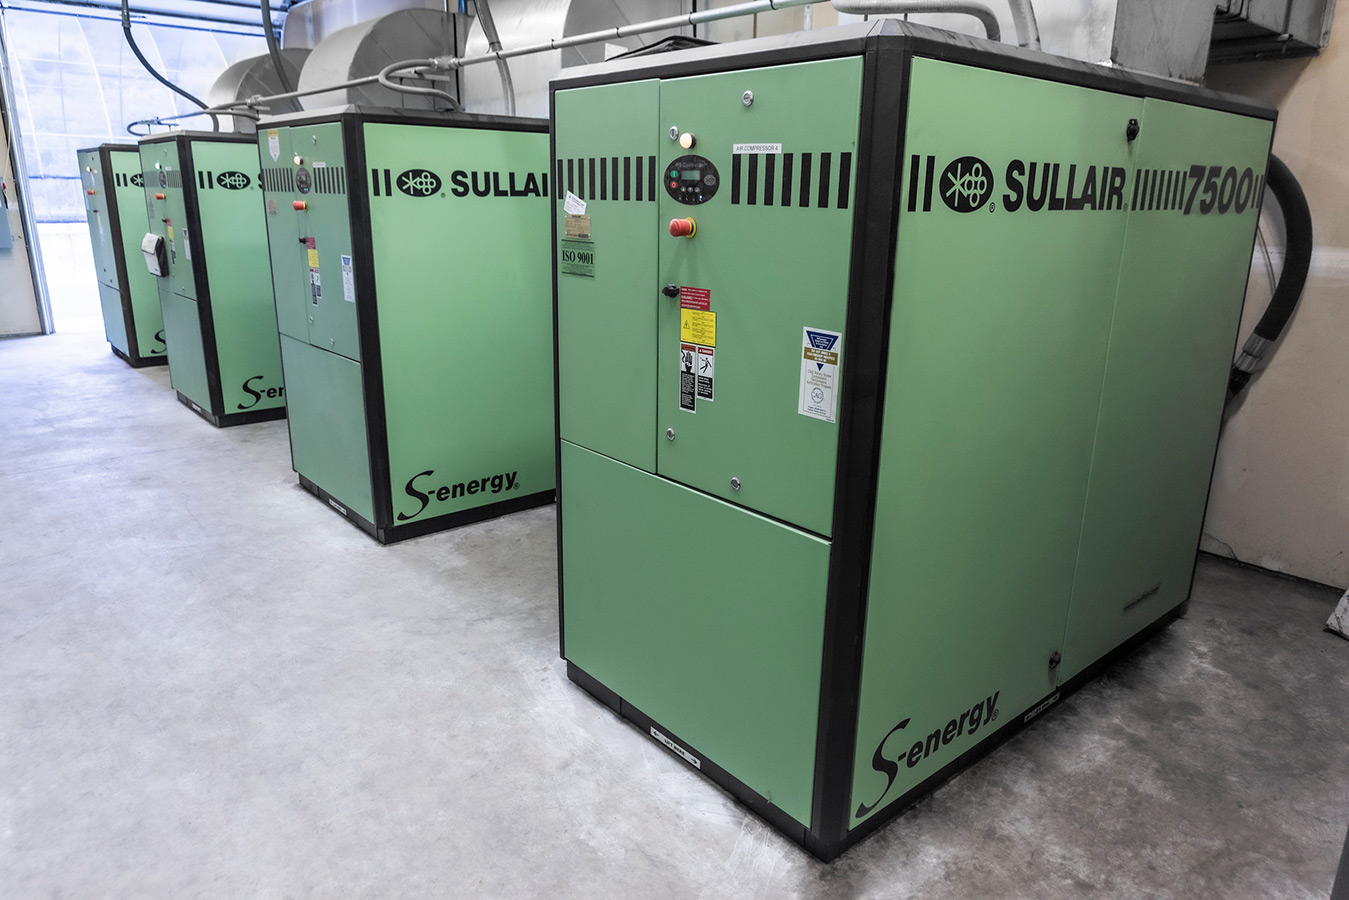 Instalación de un compresor de aire industrial S-energy 7500 de Sullair